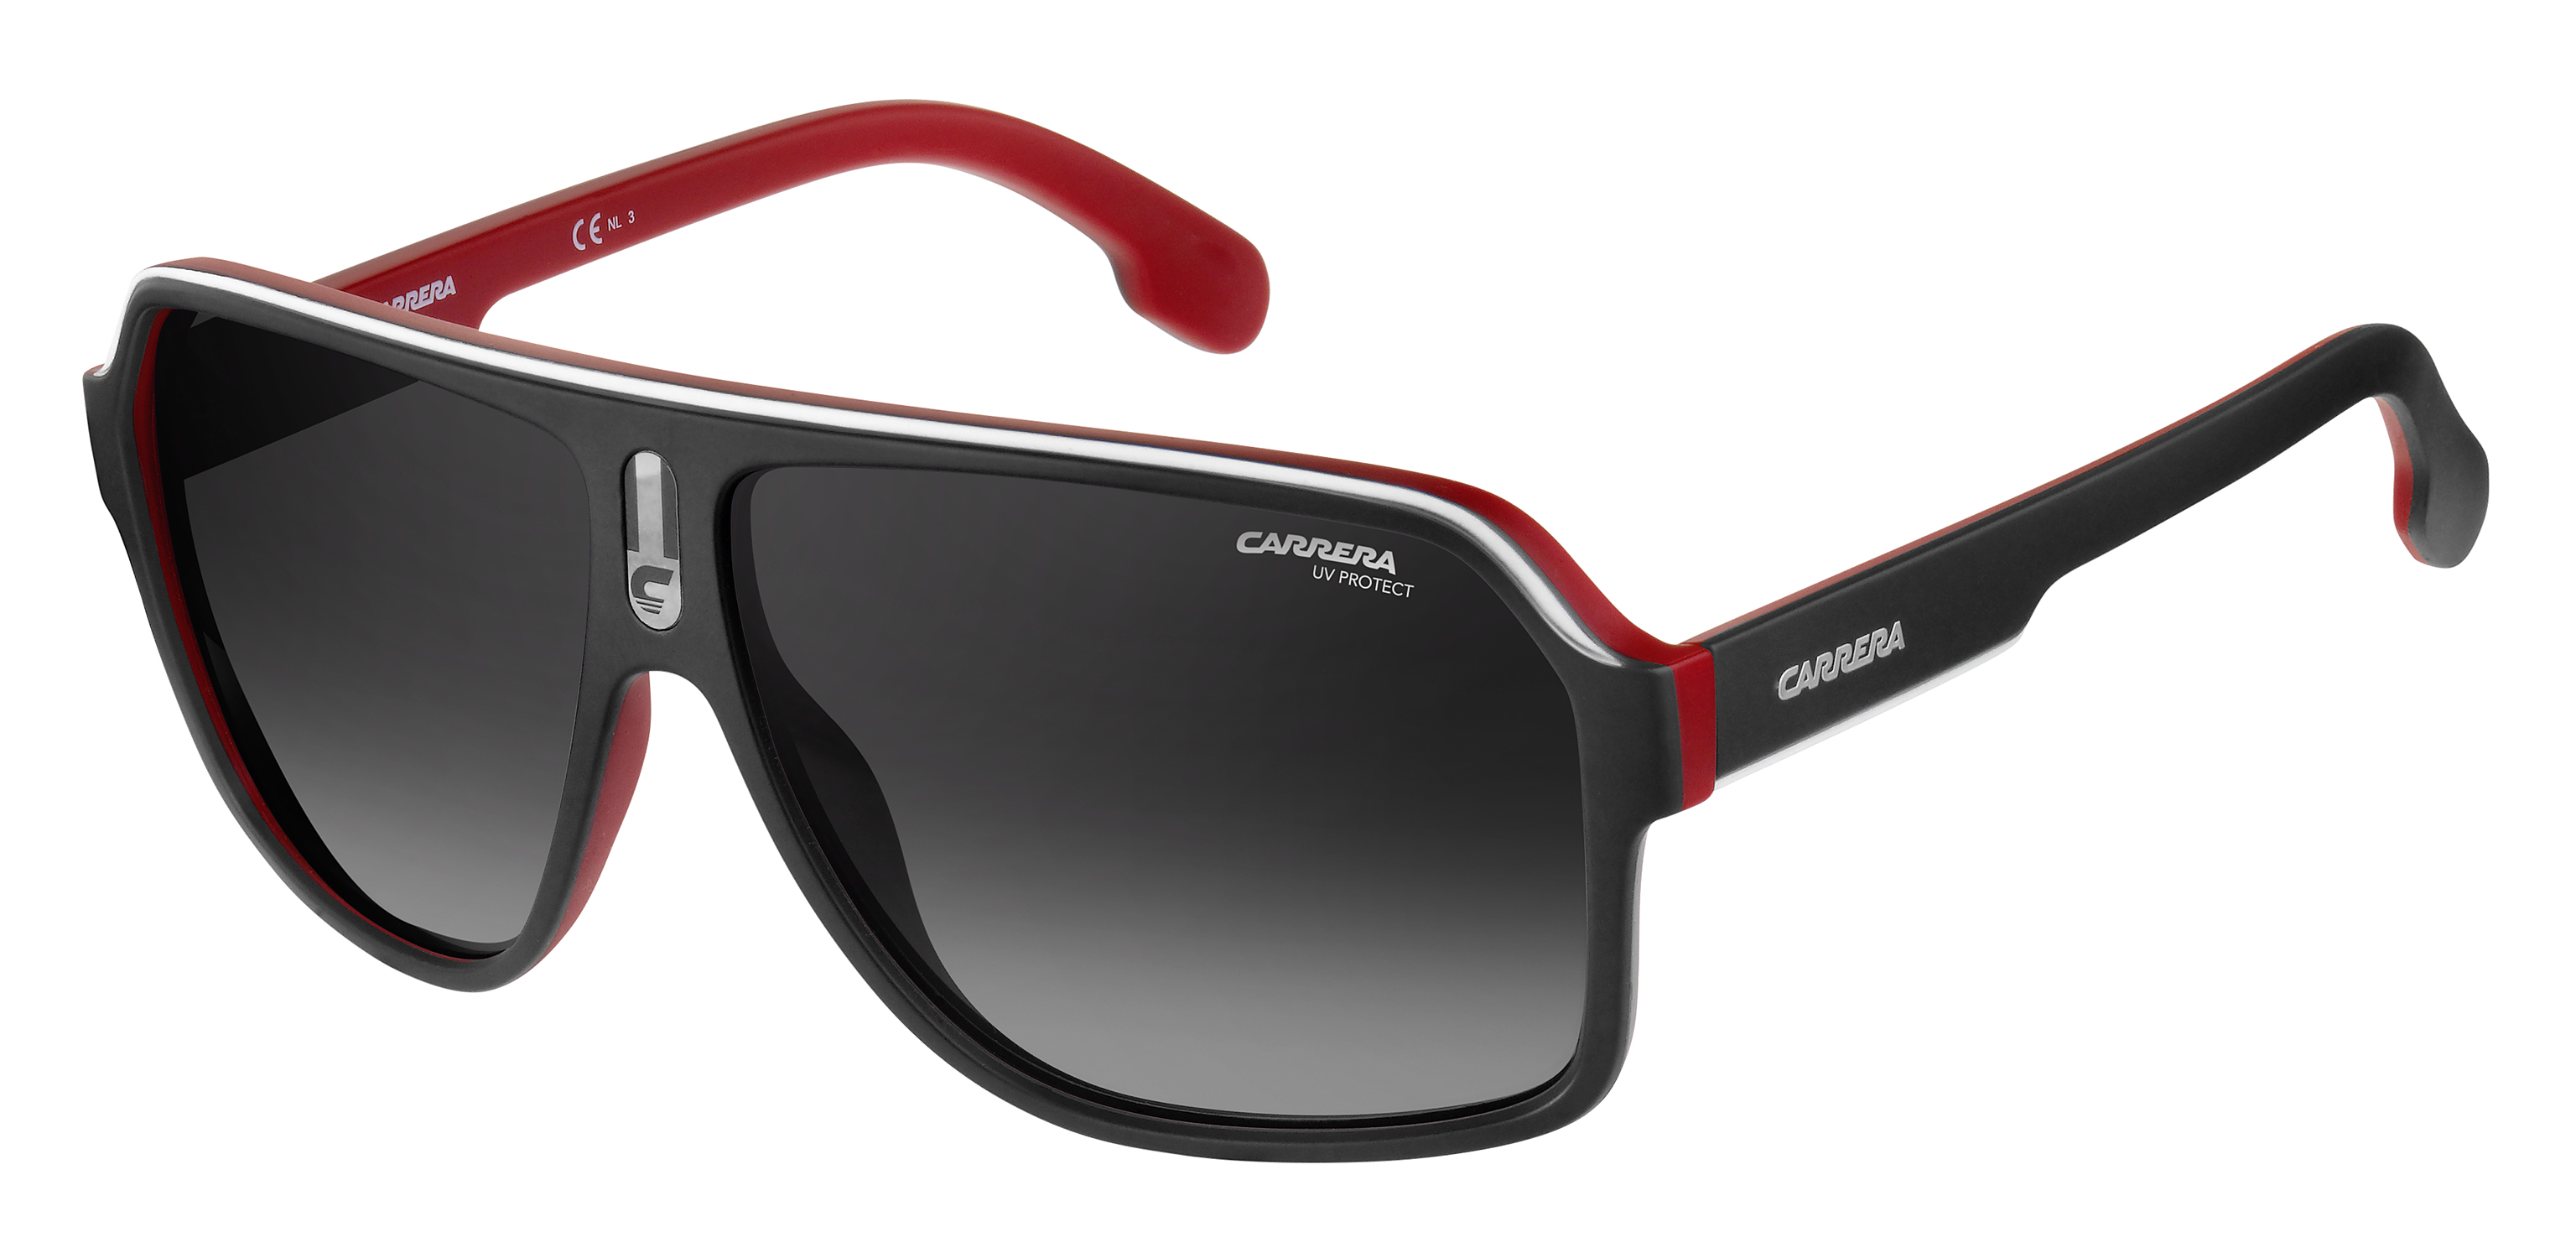 Купить очки солнцезащитные мужские брендовые. Carrera очки 1052/s. Carrera 1003 / s¡ New,. Очки Carrera мужские солнцезащитные. Очки Carrera 005/s.